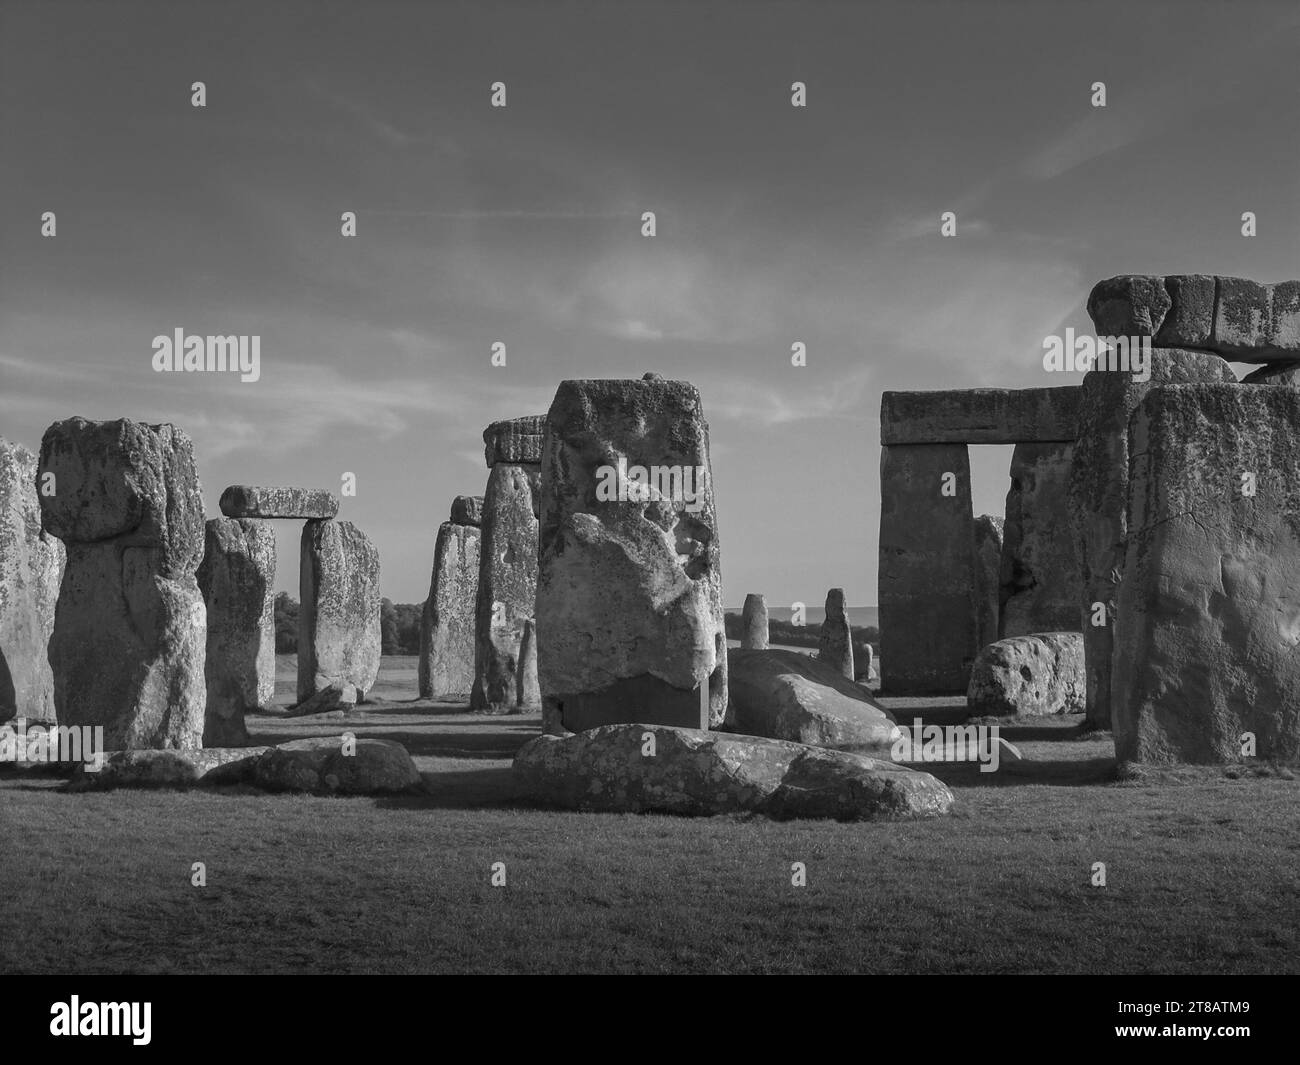 Stonehenge, pierres debout néolithiques, monument du cercle de pierre. Connexion mythique avec Merlin. Wiltshire, Angleterre, Royaume-Uni. Monochrome. Banque D'Images